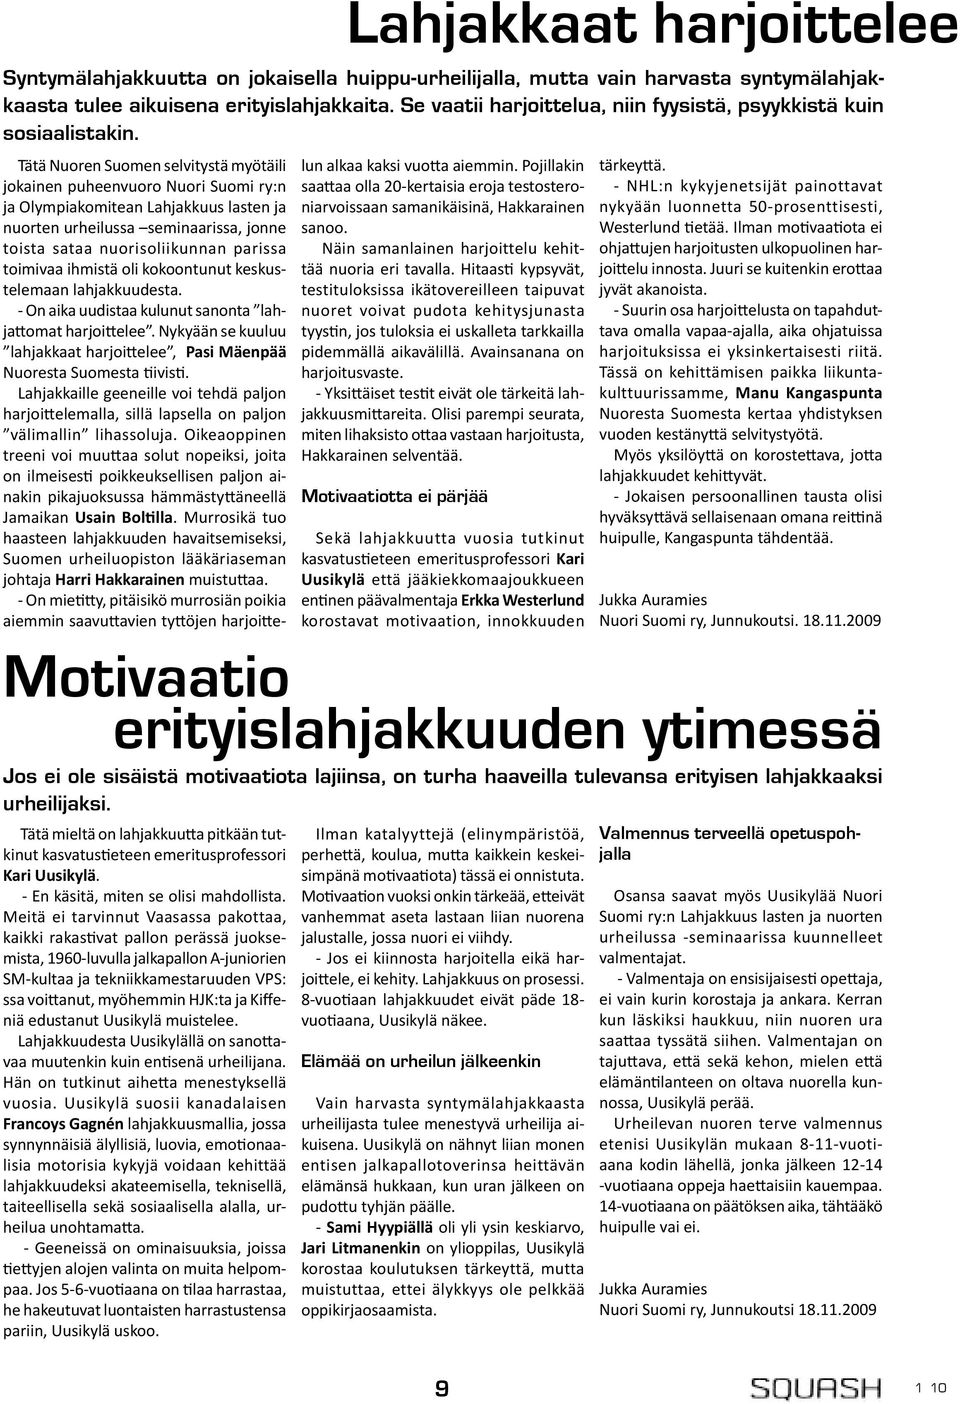 Kiffeniä edustanut Uusikylä muistelee. Lahjakkuudesta Uusikylällä on sano avaa muutenkin kuin en senä urheilijana. Hän on tutkinut aihe a menestyksellä vuosia.